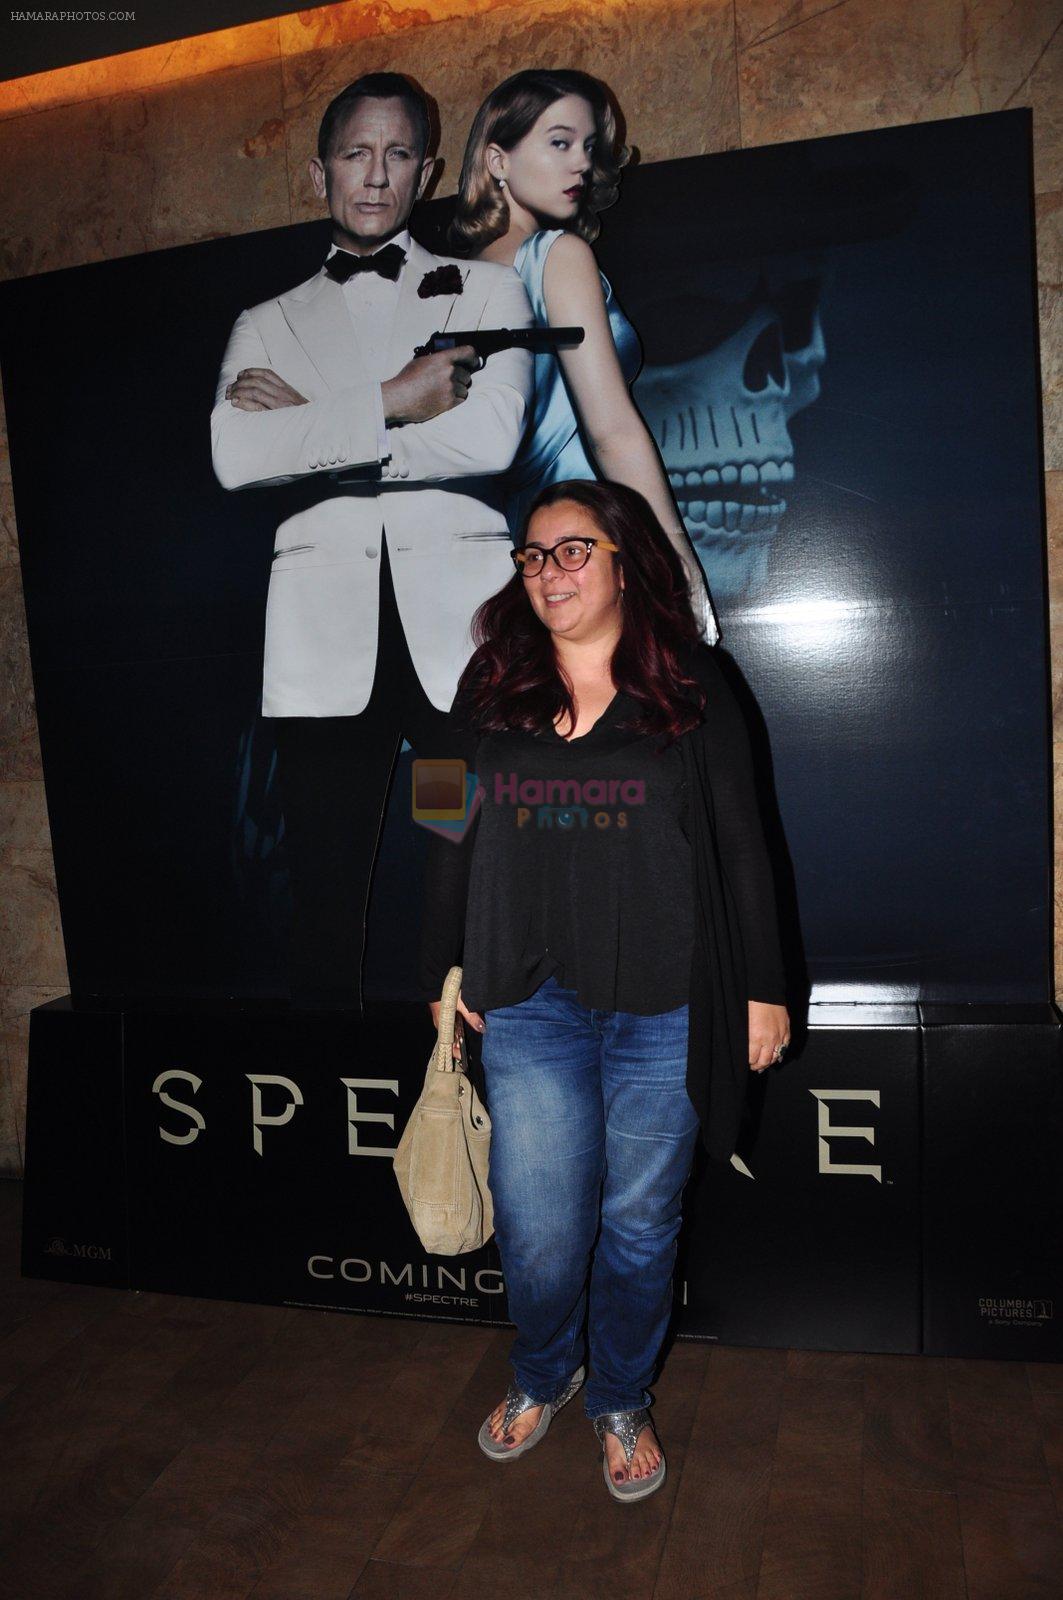 Shrishti Behl at Spectre screening in Mumbai on 18th Nov 2015